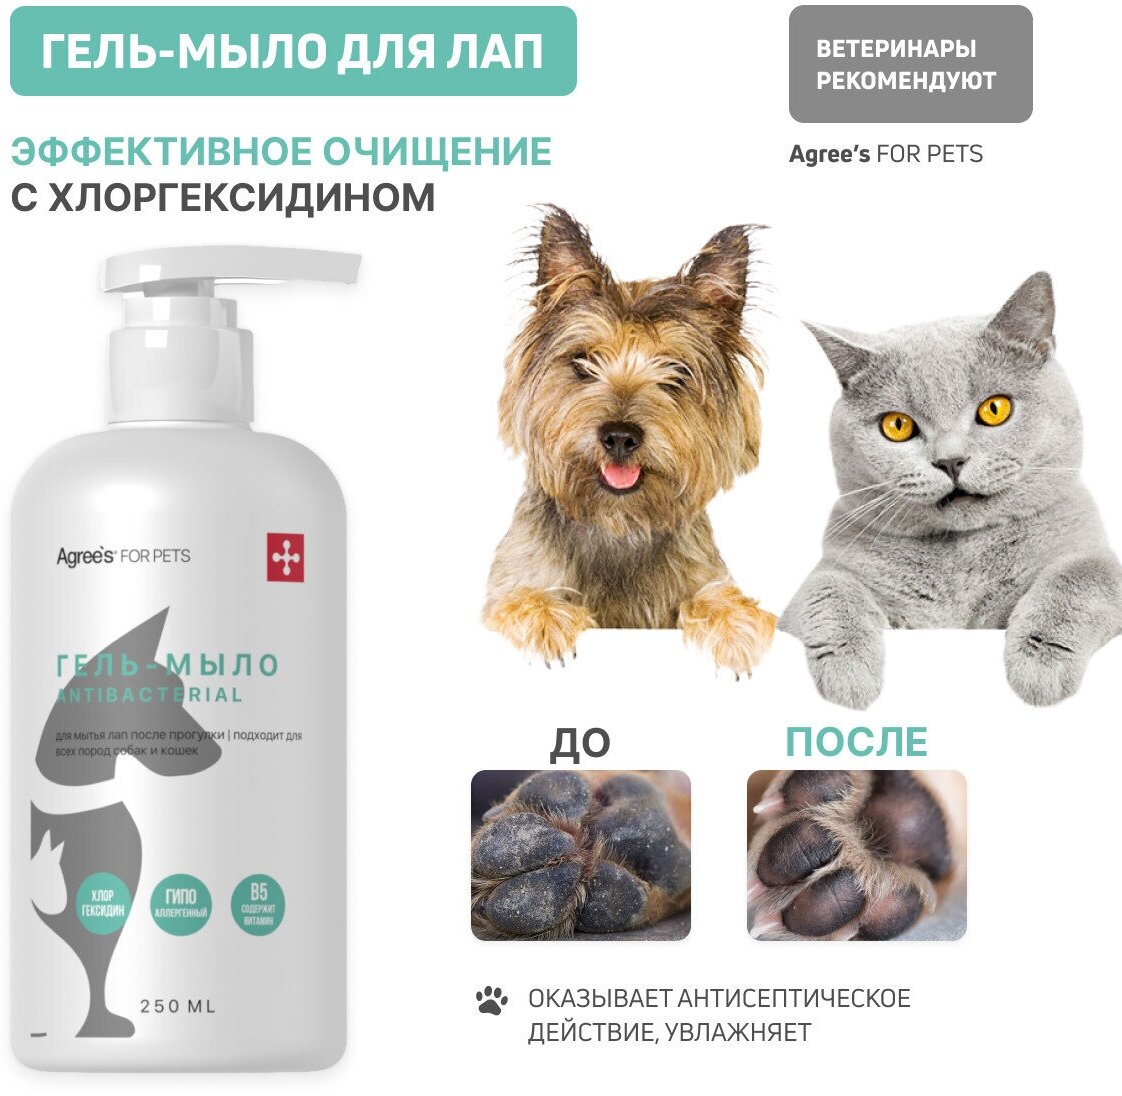 Гель мыло для лап собак кошек после прогулки Agree's For Pets с хлоргексидином 250 мл косметика уход для животных